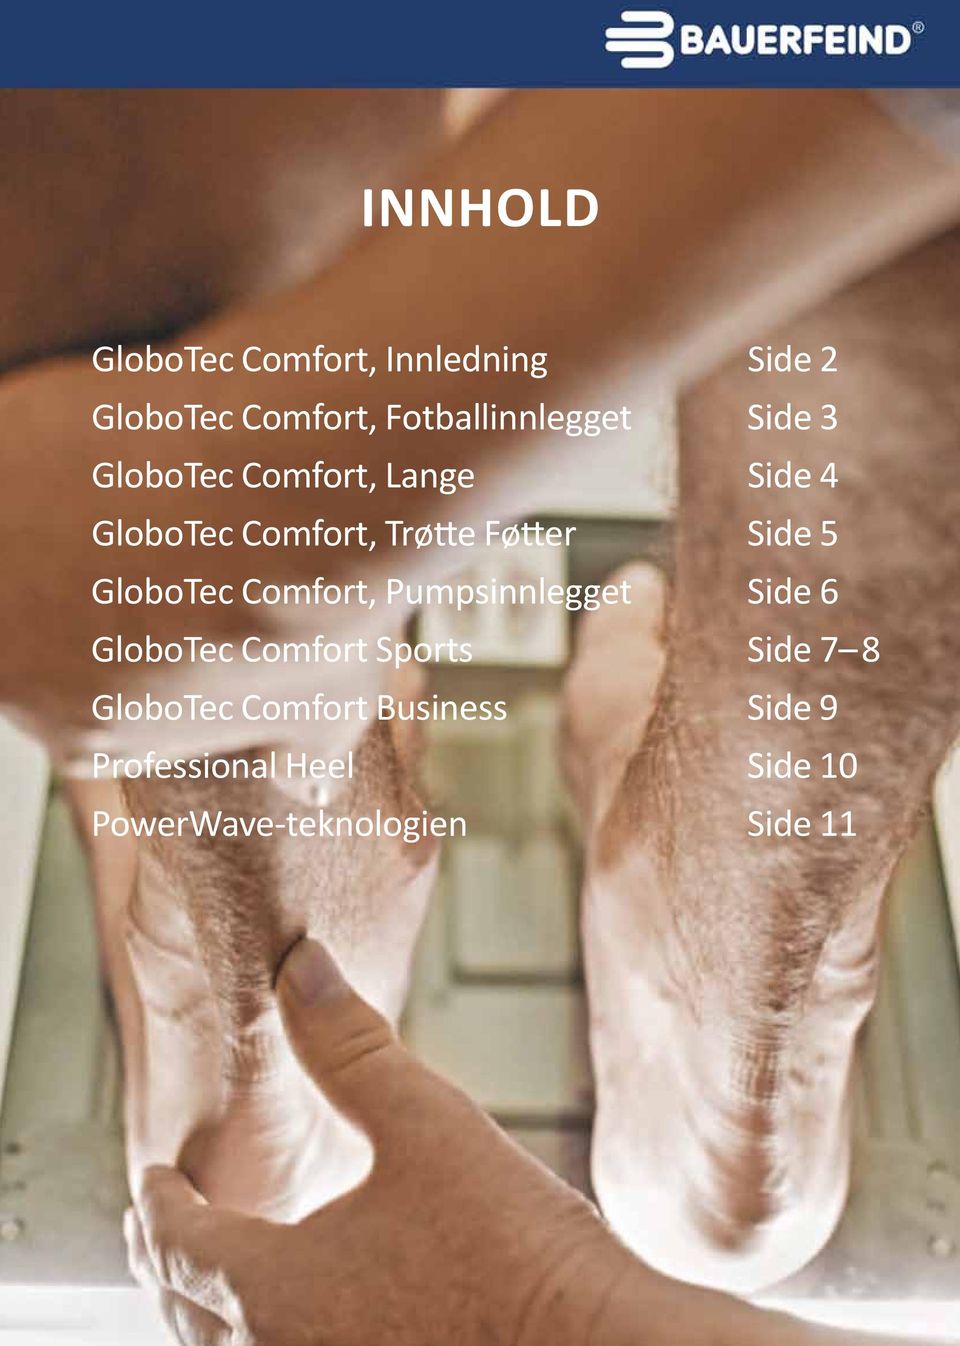 GloboTec Comfort, Pumpsinnlegget Side 6 GloboTec Comfort Sports Side 7 8